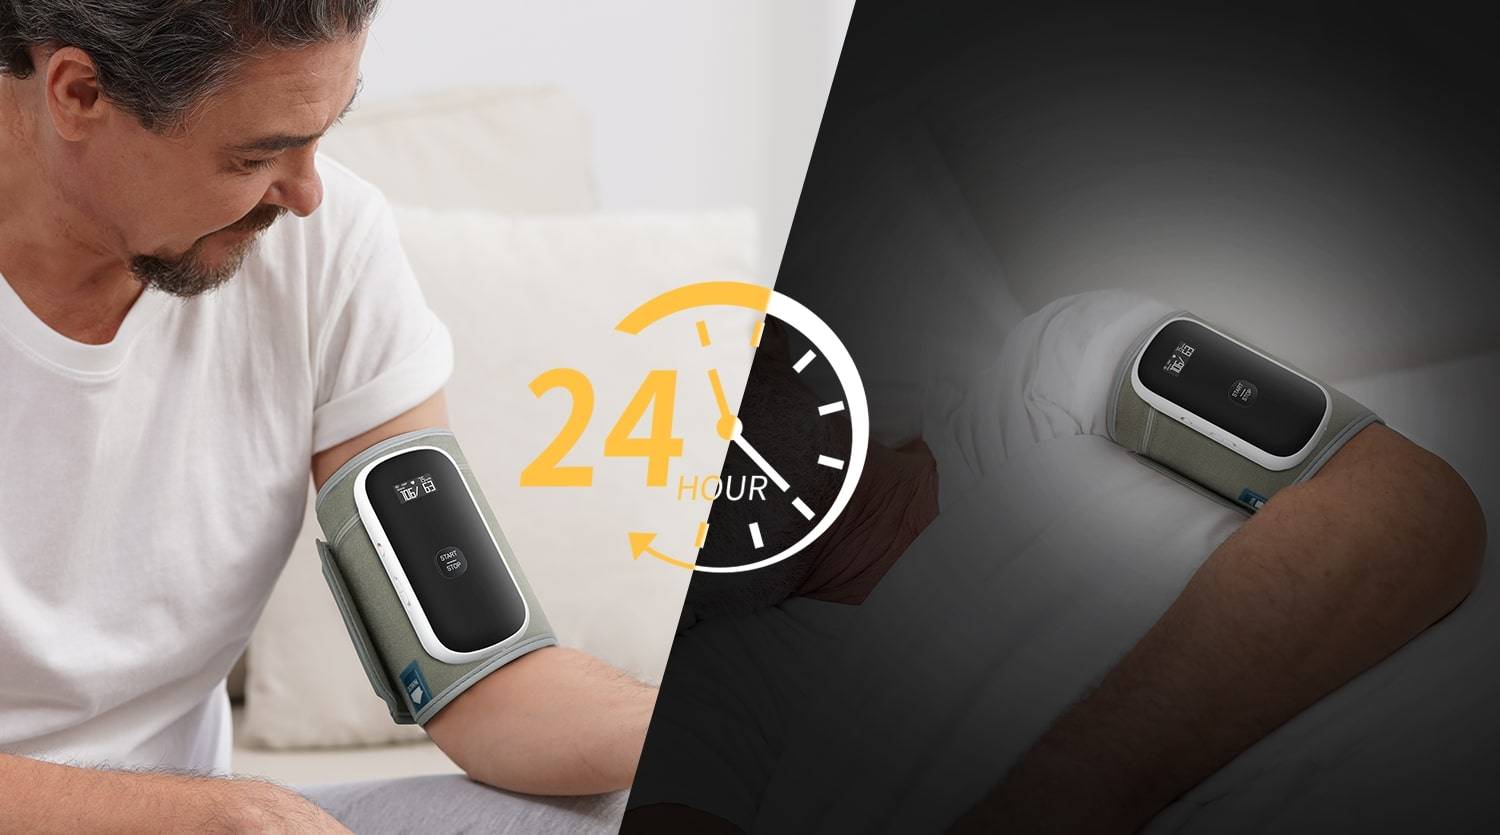 جهاز قياس ضغط الدم المتنقل على مدار 24 ساعة